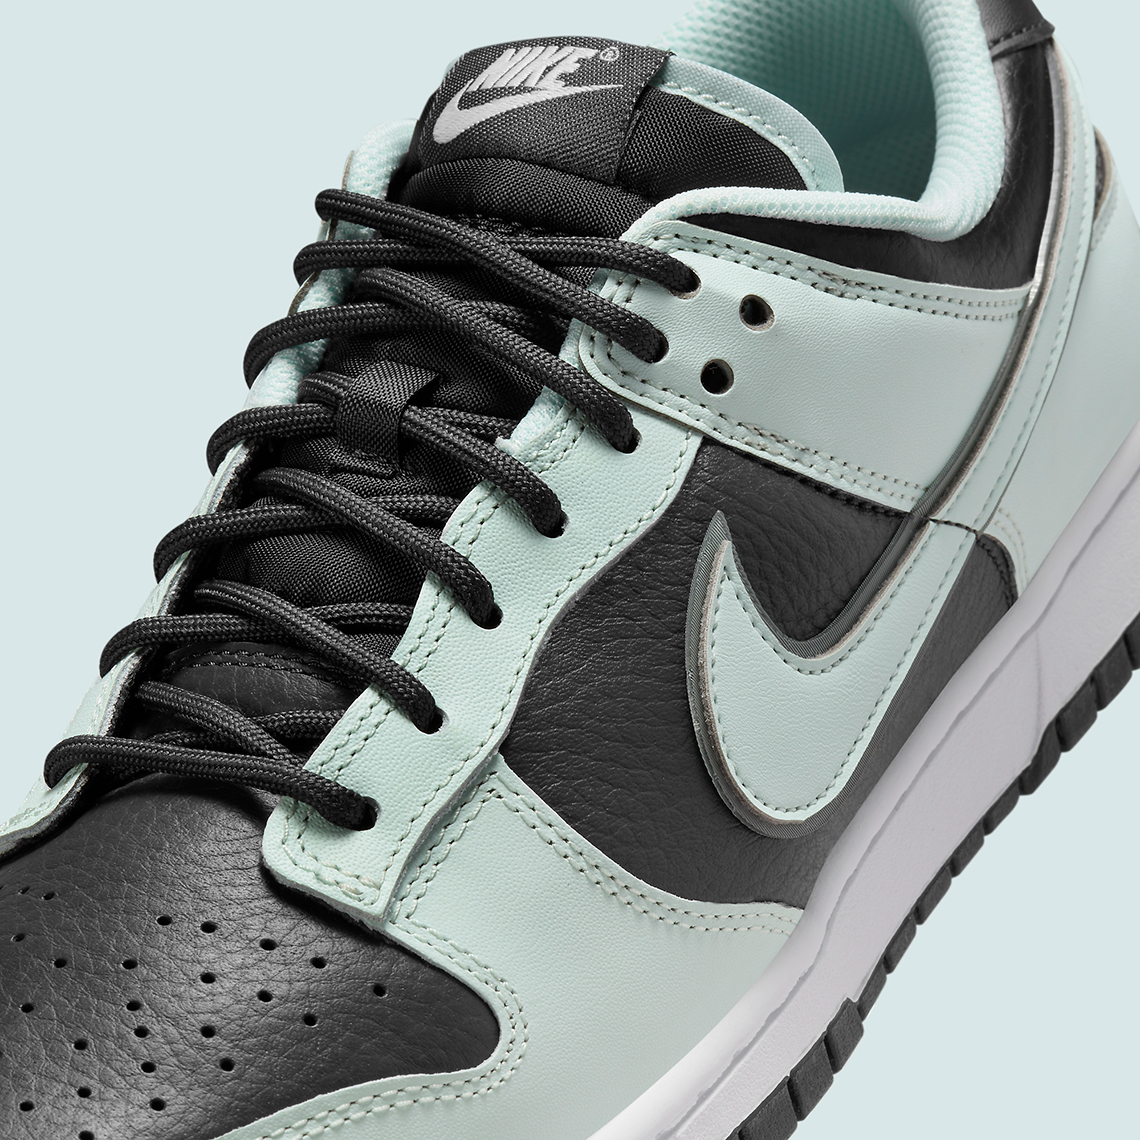 Nike Dunk Low Prm Dark Smoke Grey Barely Green Fz1670 001 3